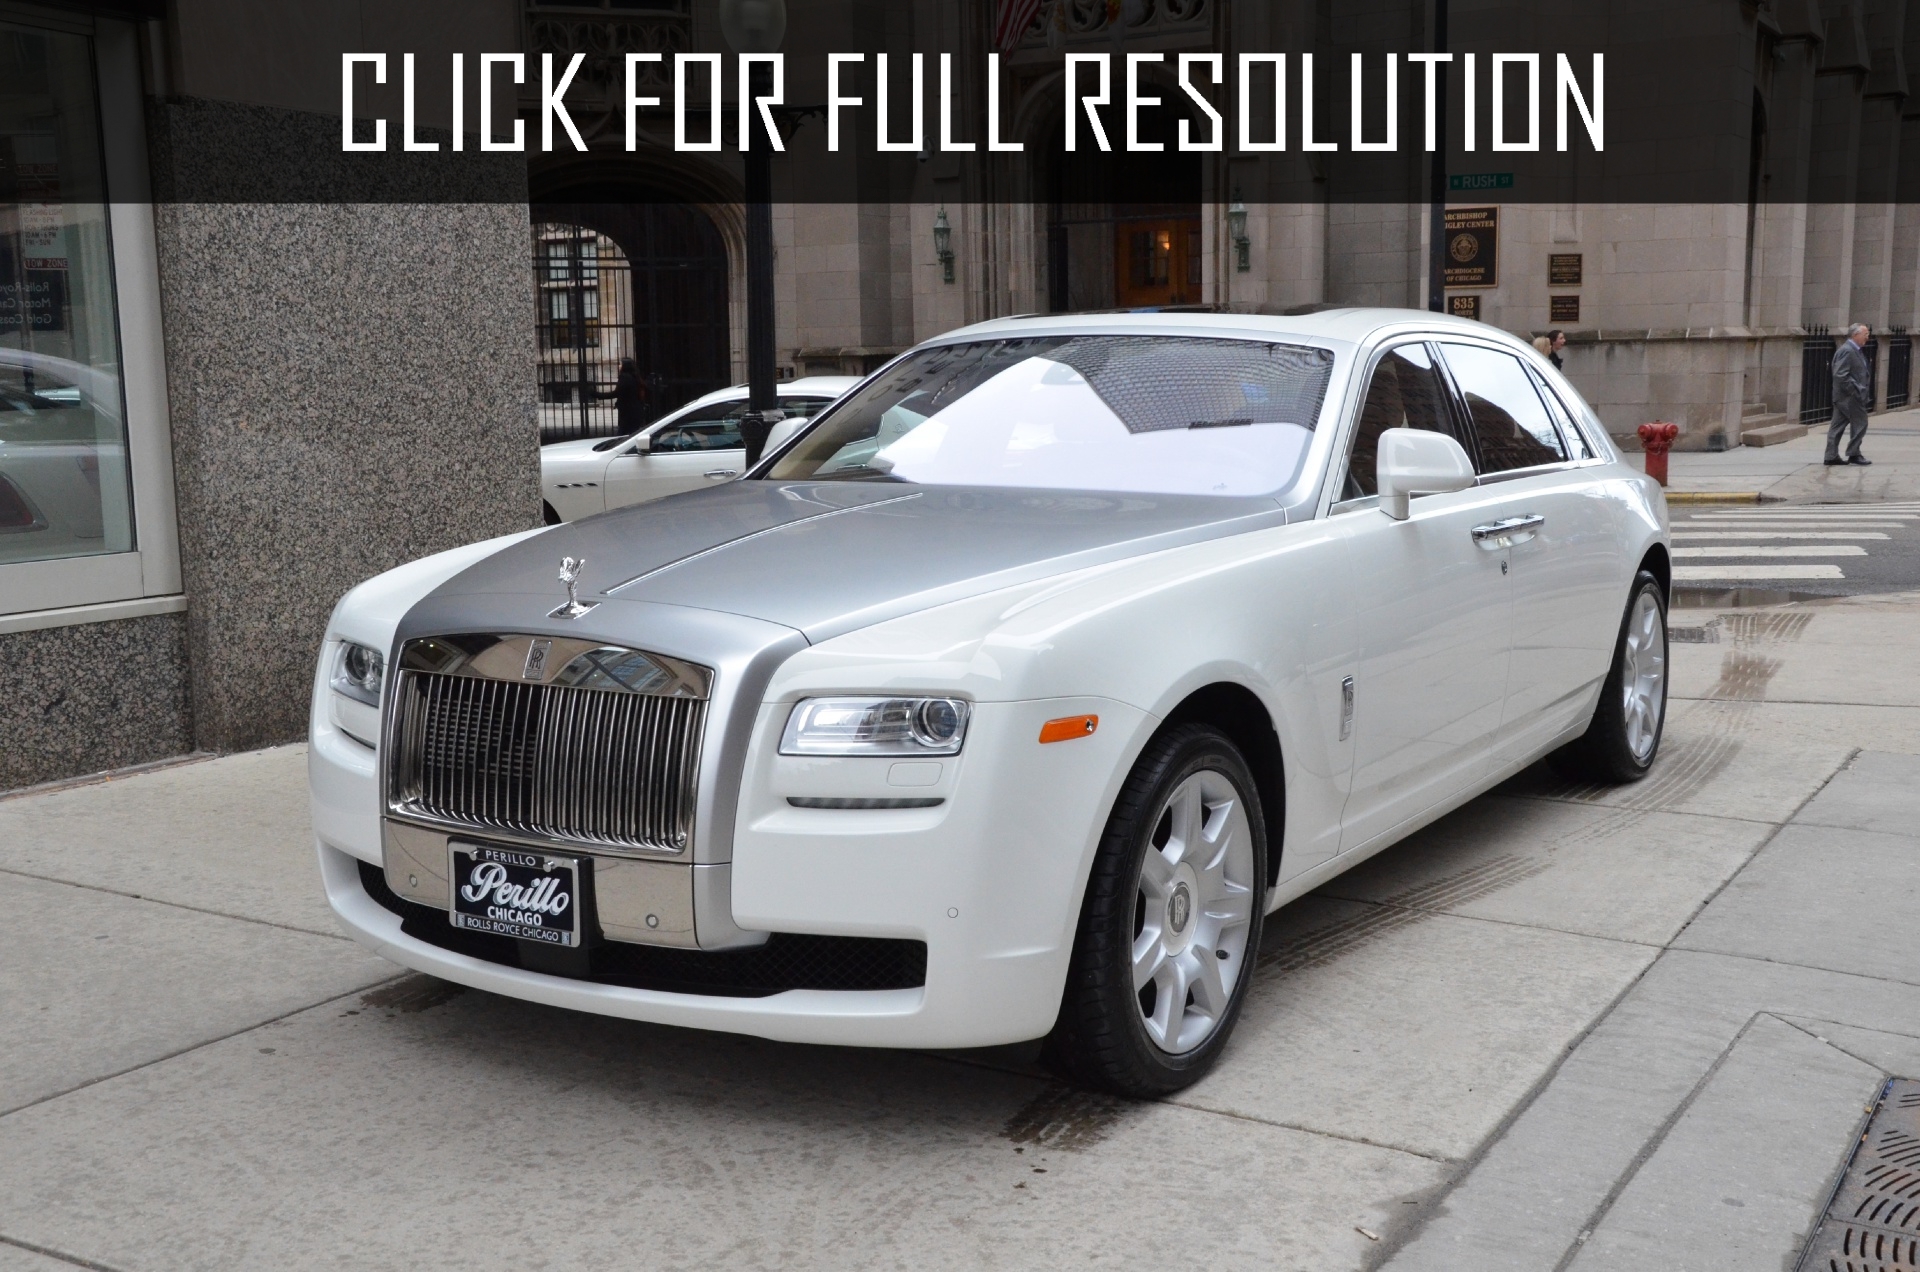 2012 Rolls Royce Phantom Extended Wheelbase